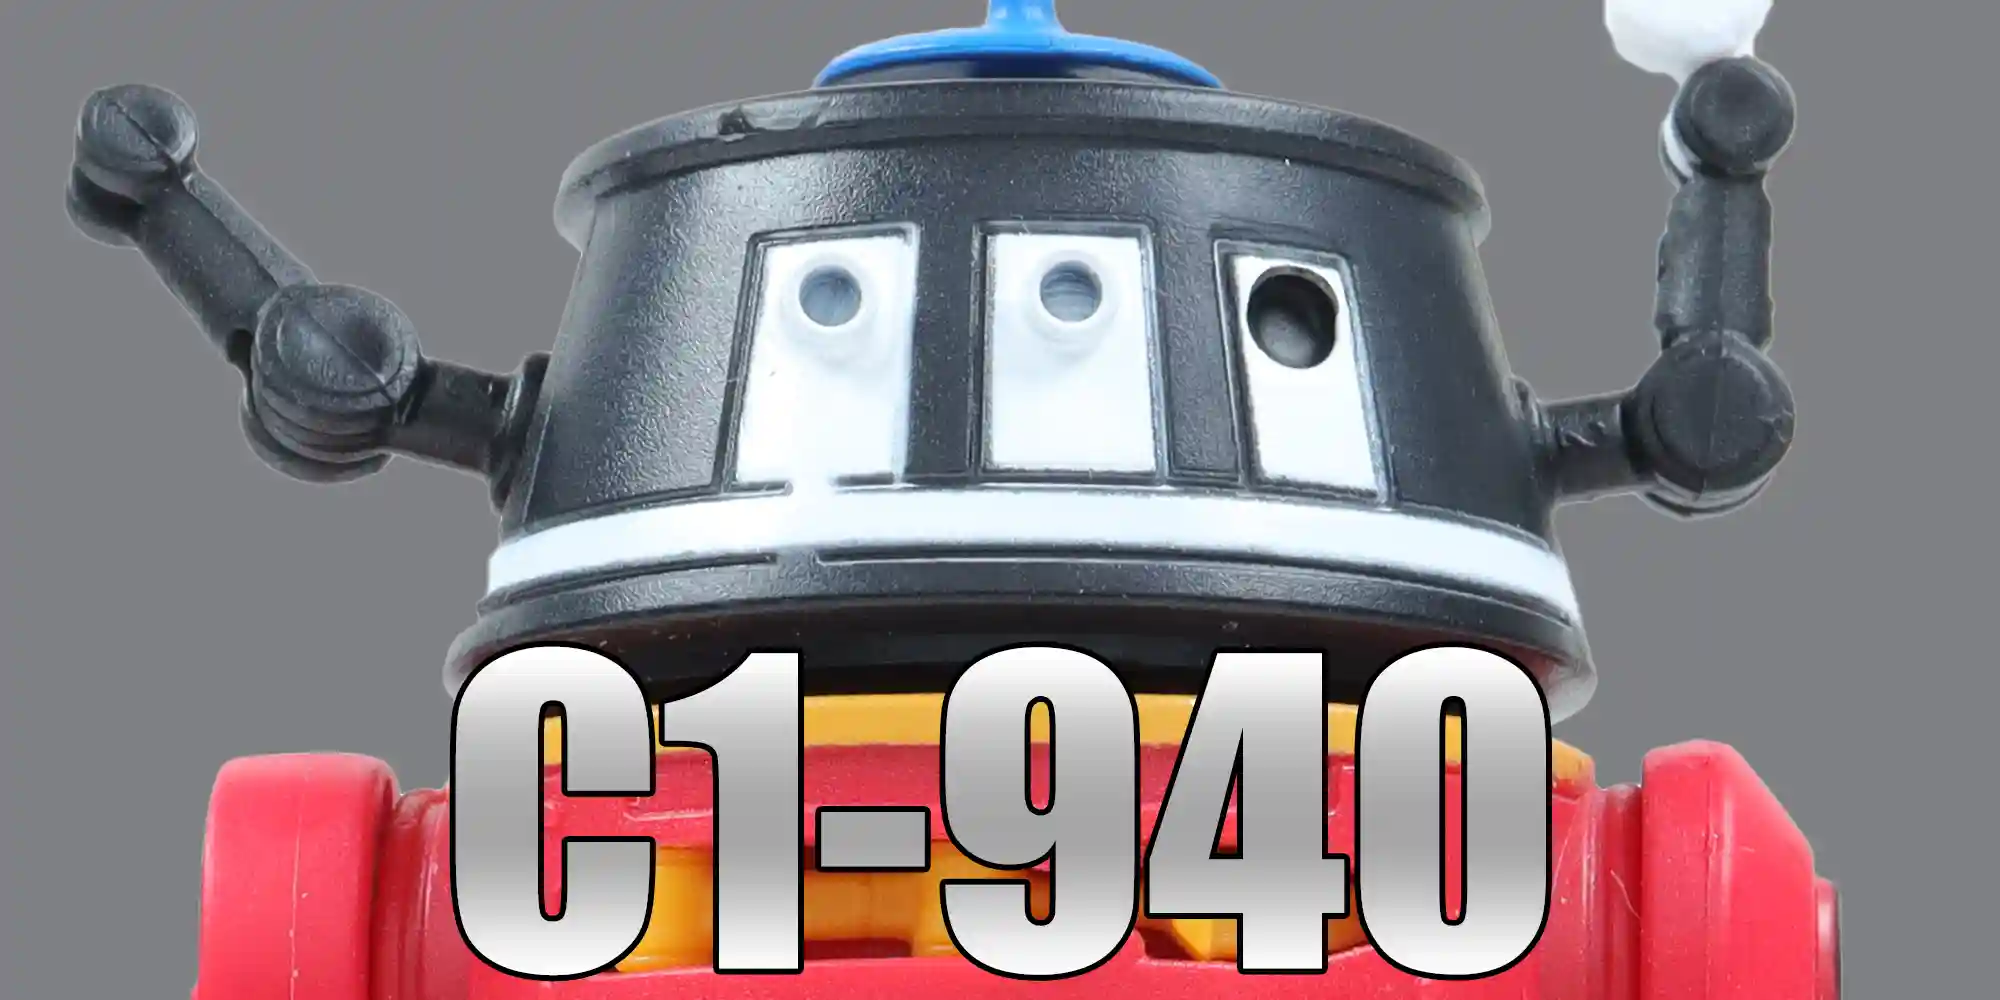 C1-940